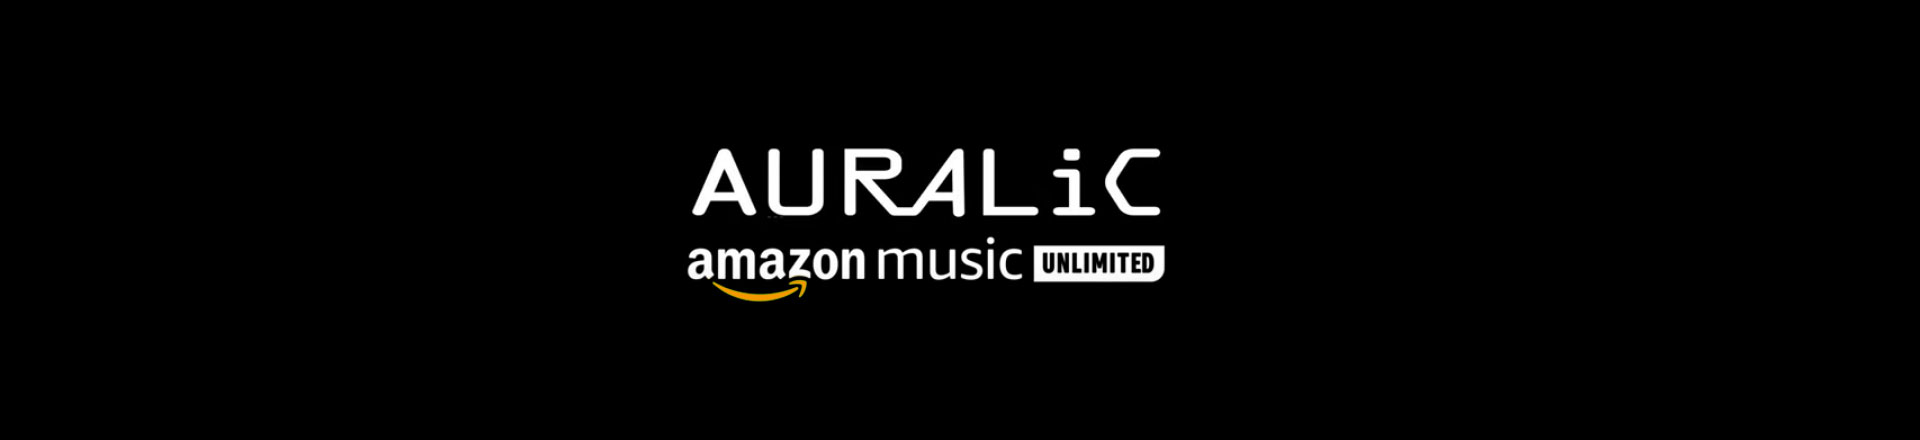 AURALiC: serwis Amazon Music Unlimited na wszystkich Auralic'ach